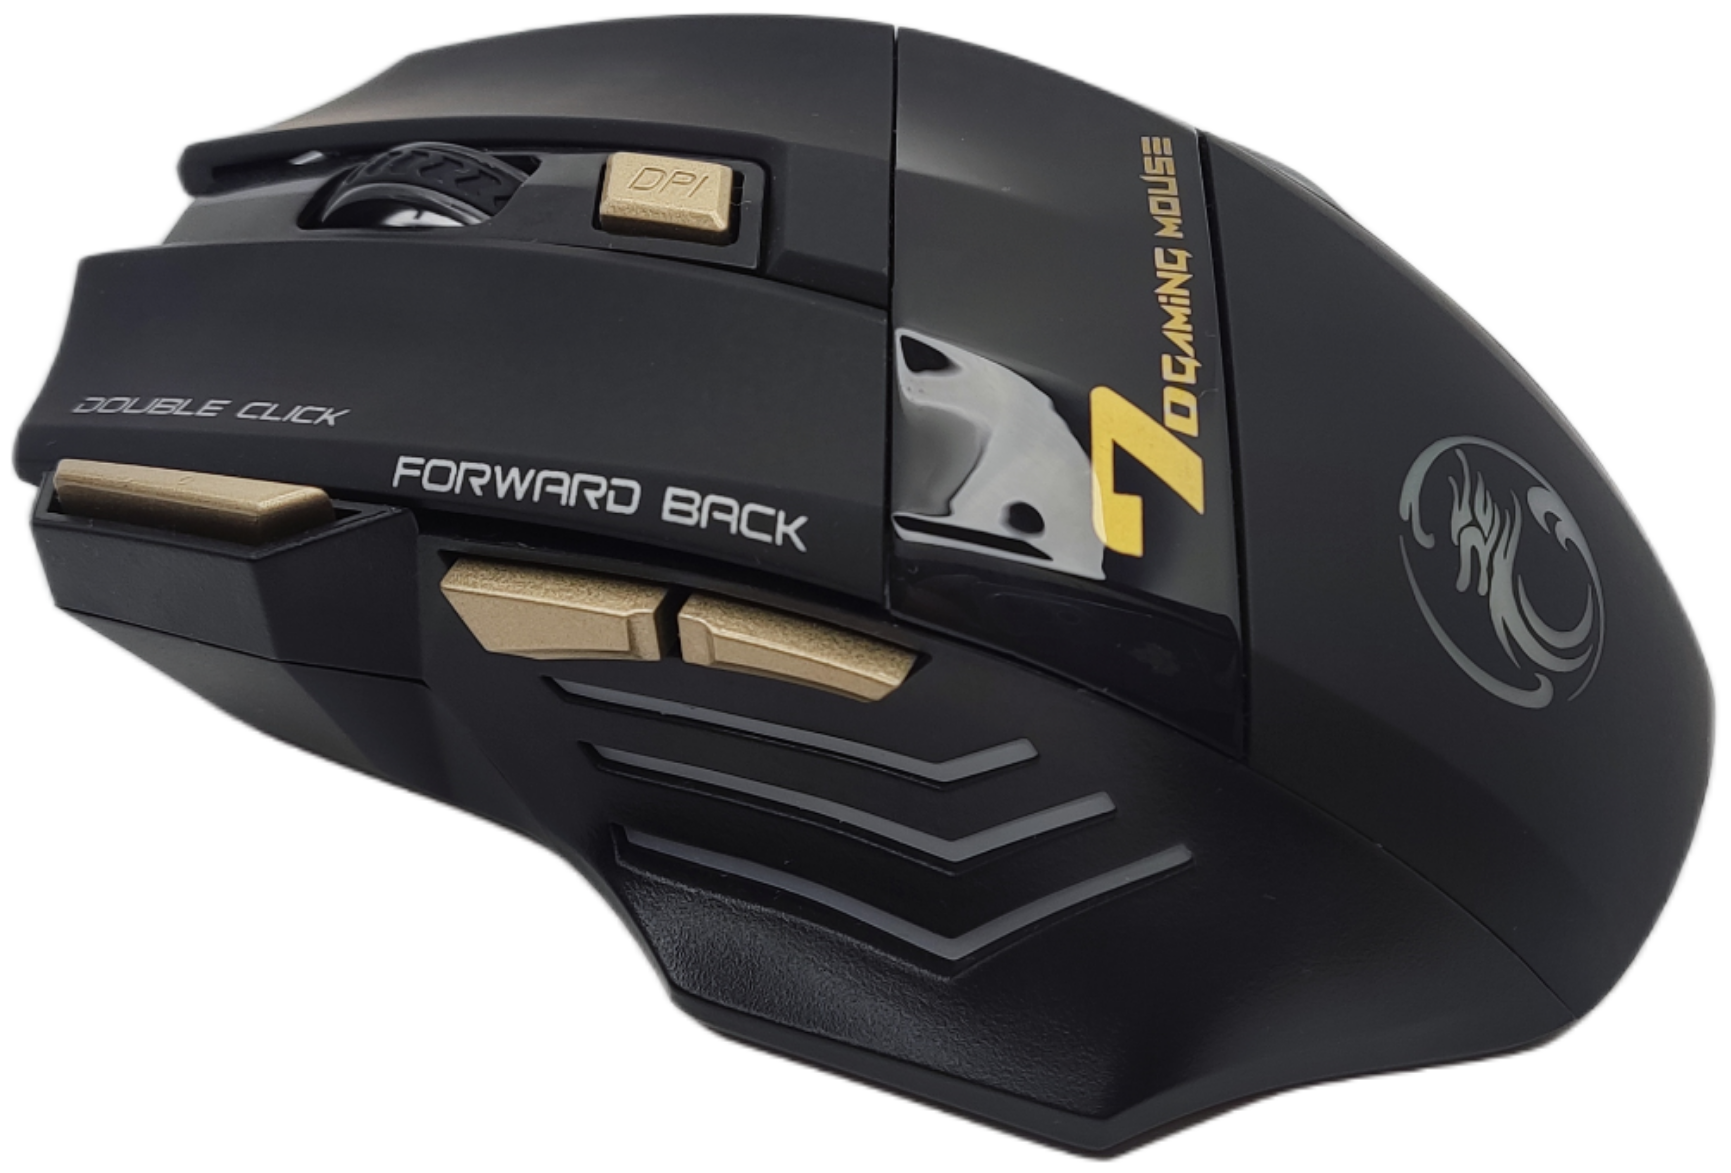 Игровая мышь беспроводная GW X7, 5500DPI , RGB, бесшумный клик,Bluetooth, цвет Черный.